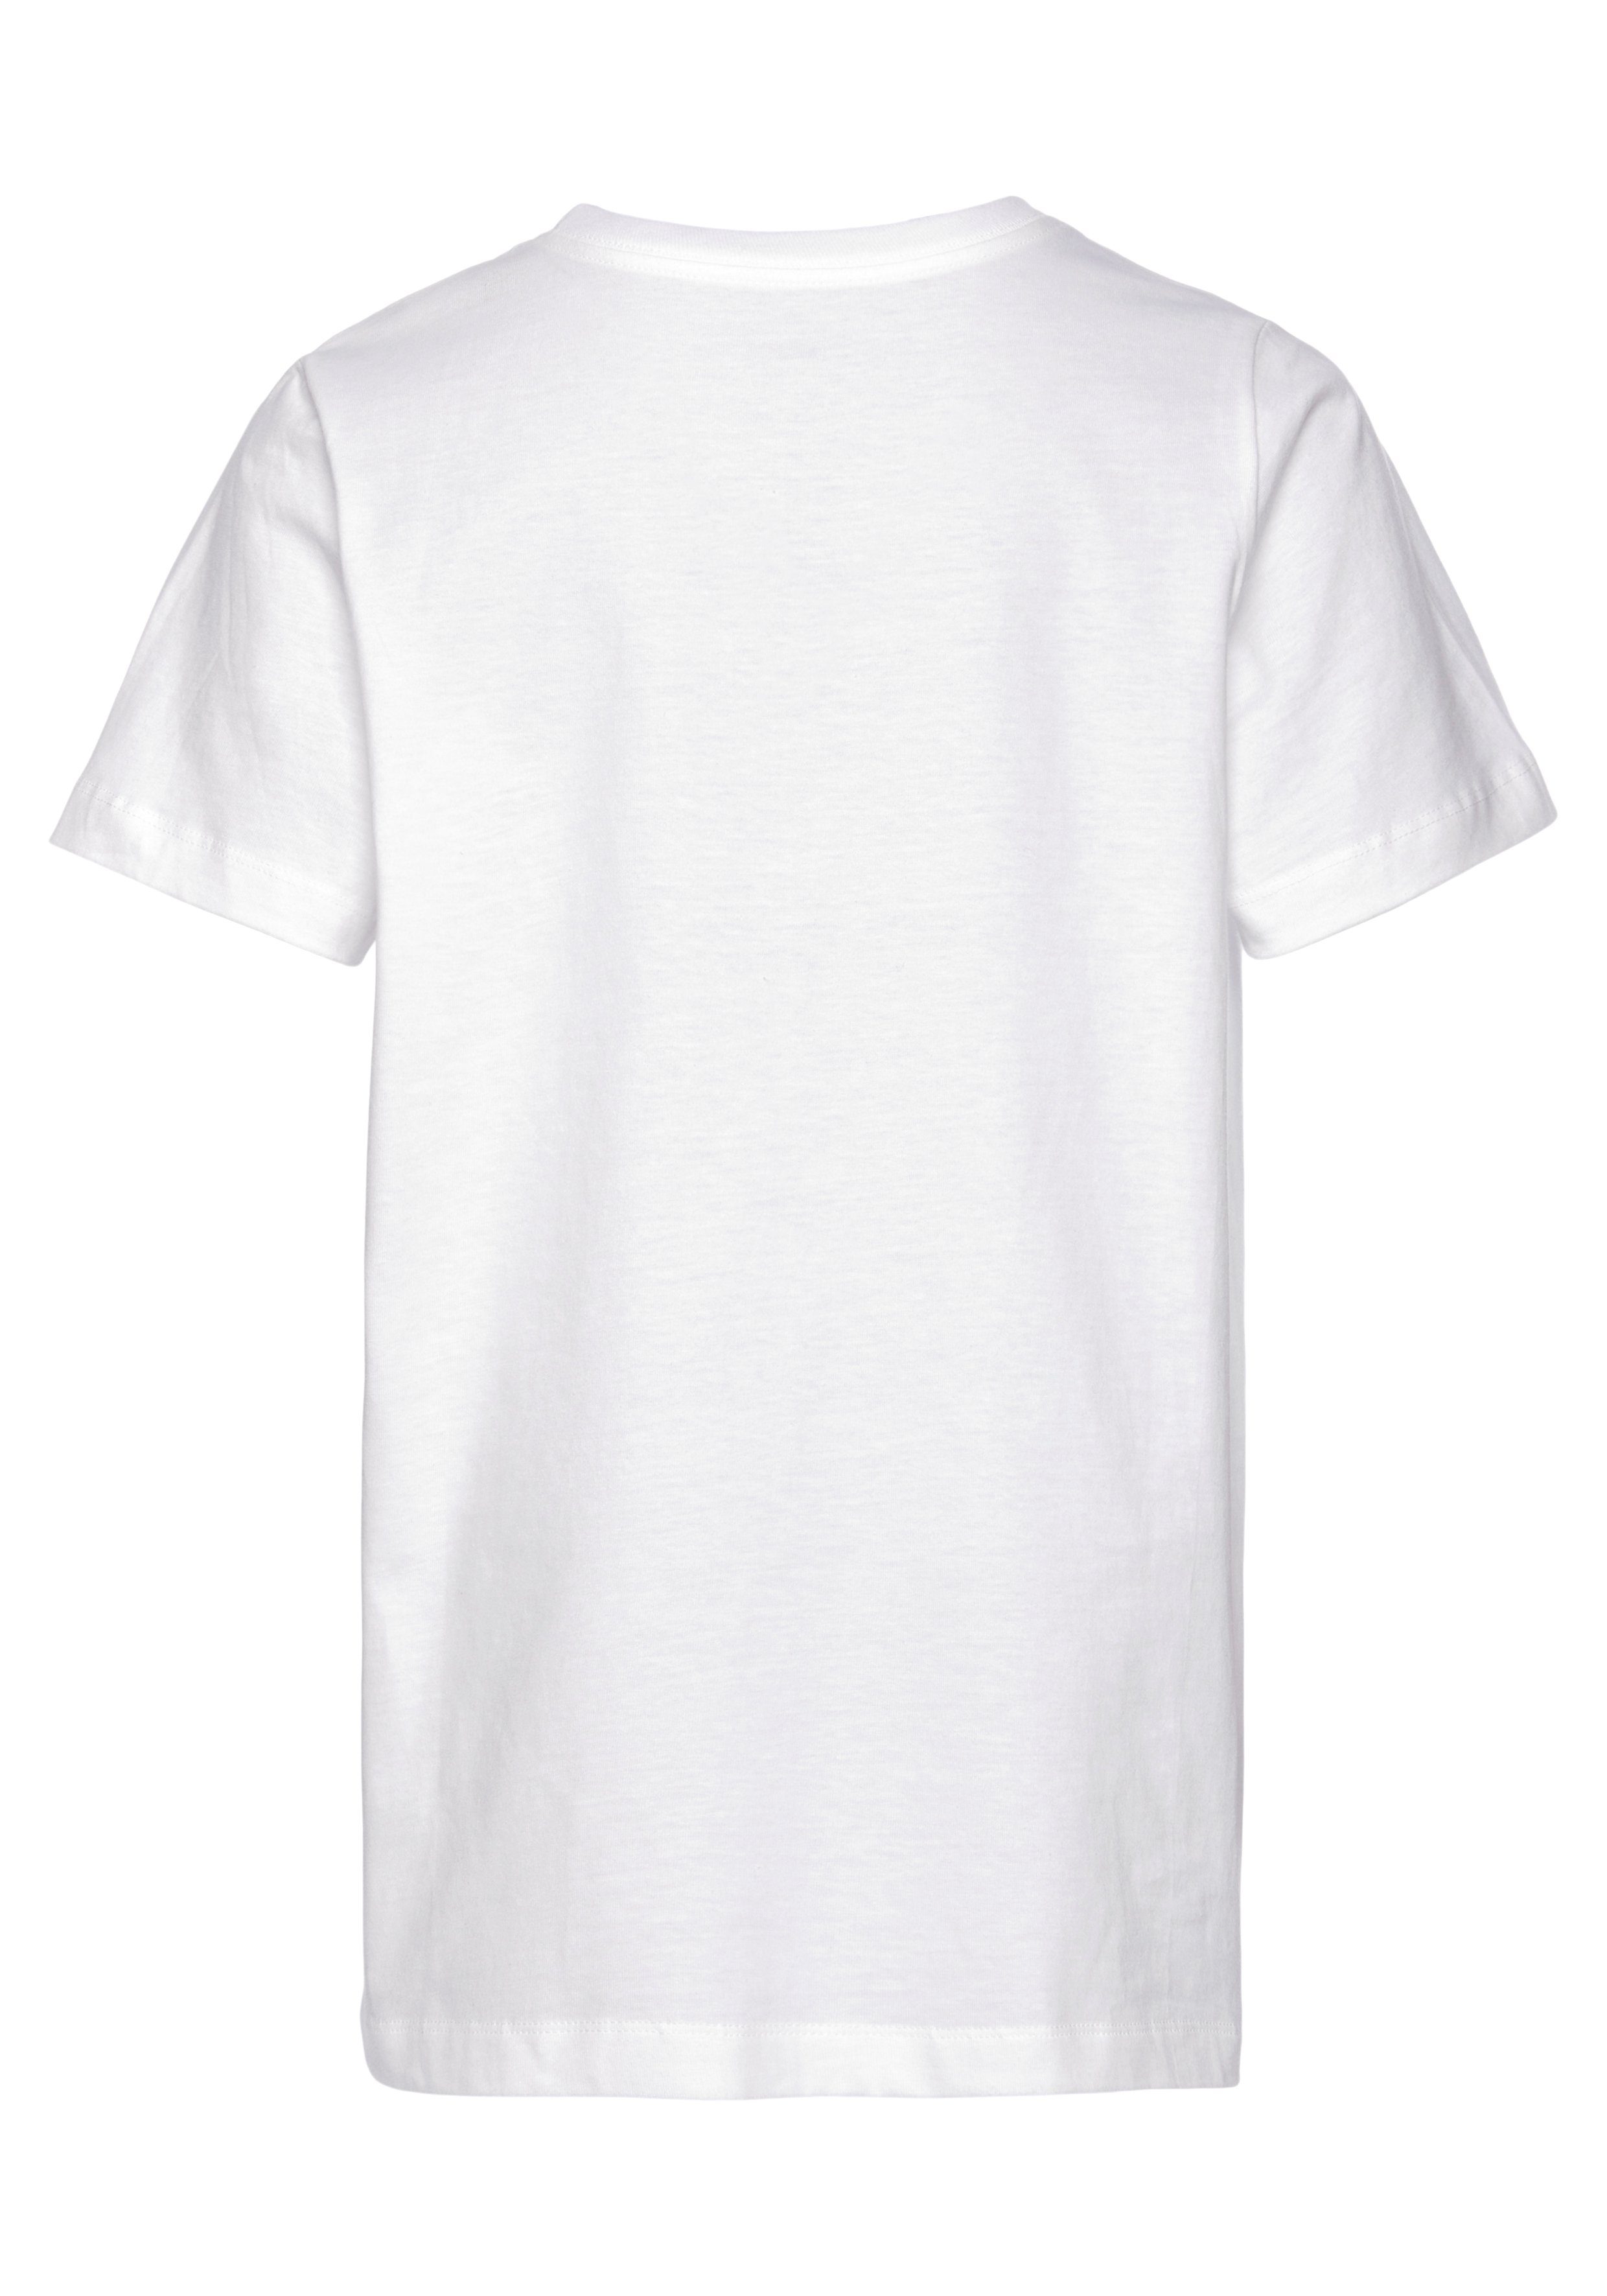 Nike Sportswear T-SHIRT KIDS' T-Shirt weiß BIG